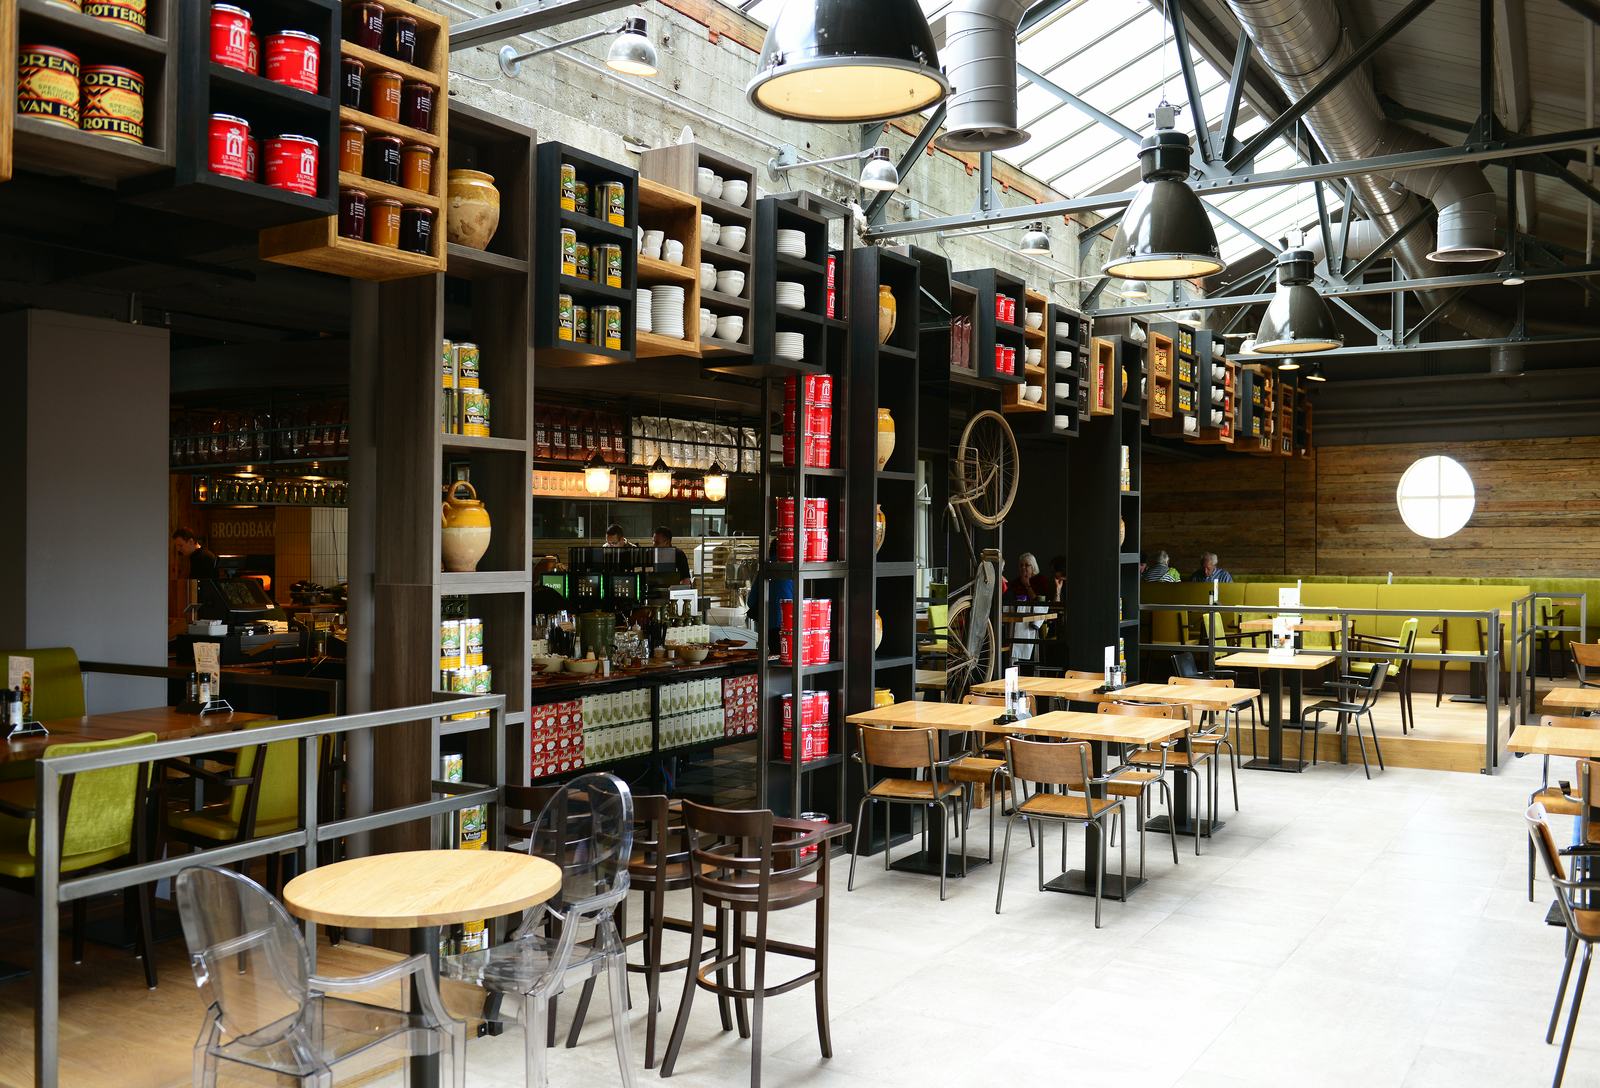 La Place opent restaurant en wijnbar